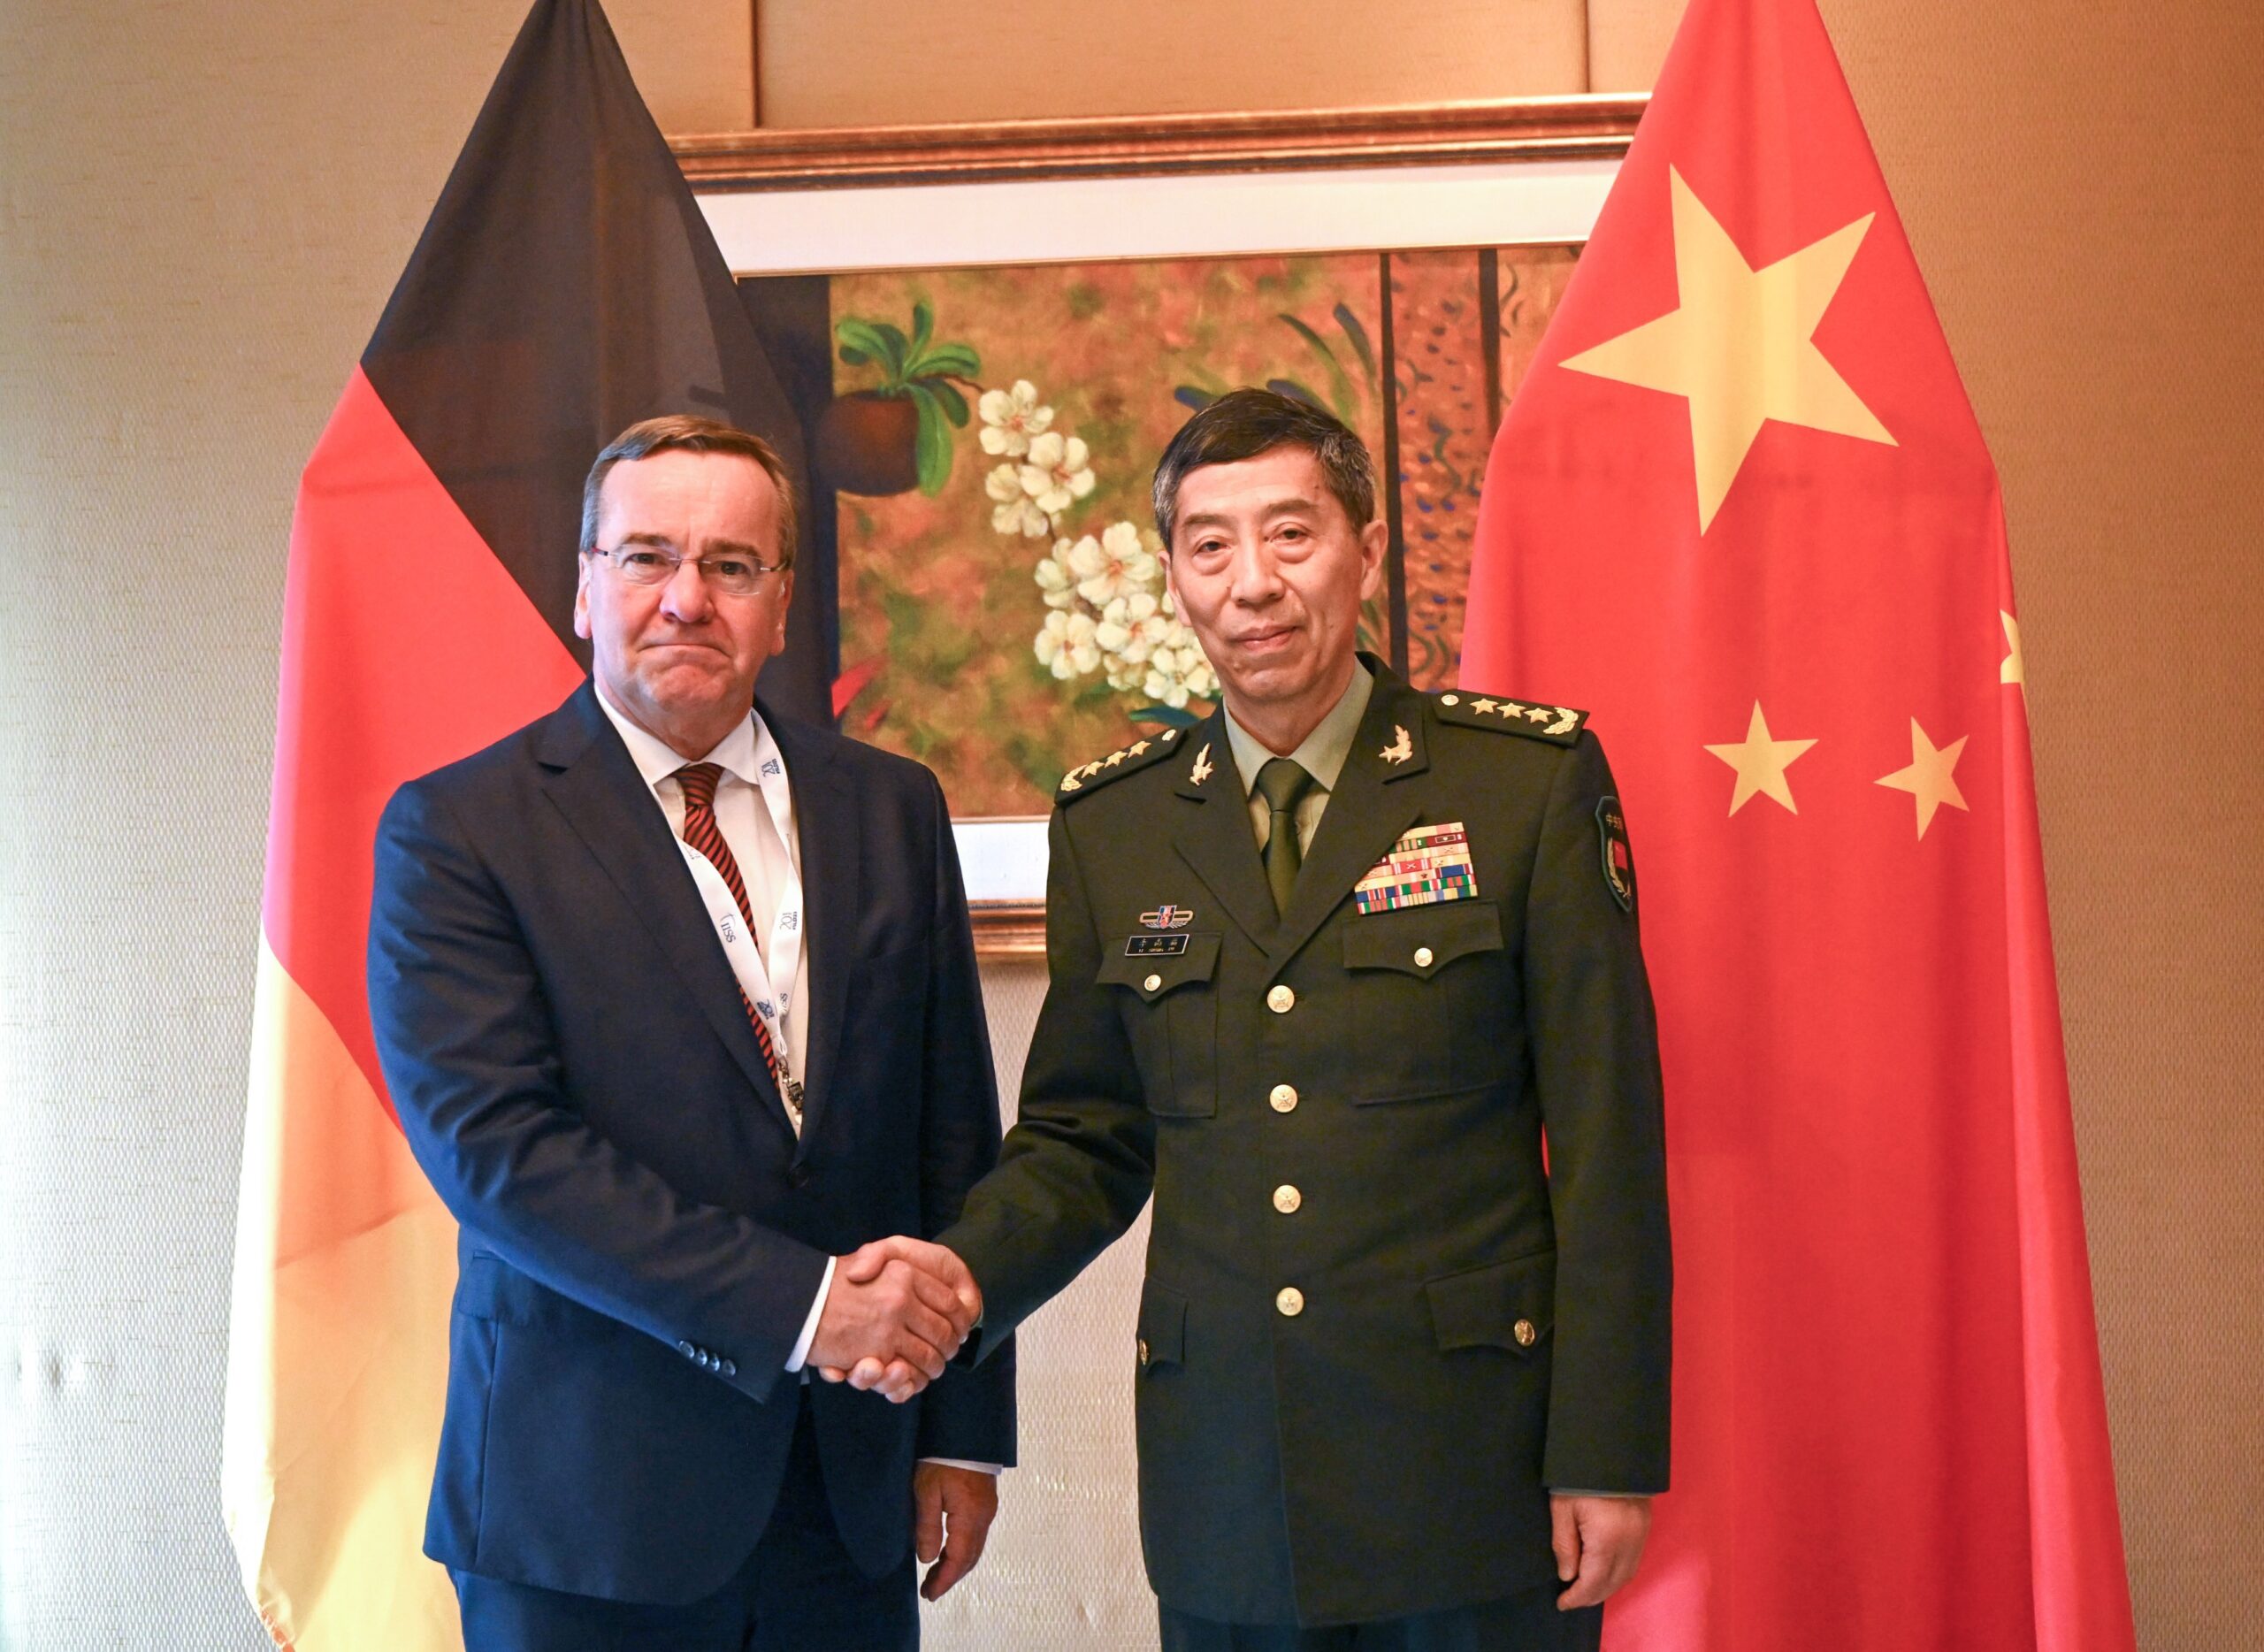 Verteidigungsminister Boris Pistorius (SPD) trifft sich mit dem chinesischen Verteidigungsminister General Li Shangfu.